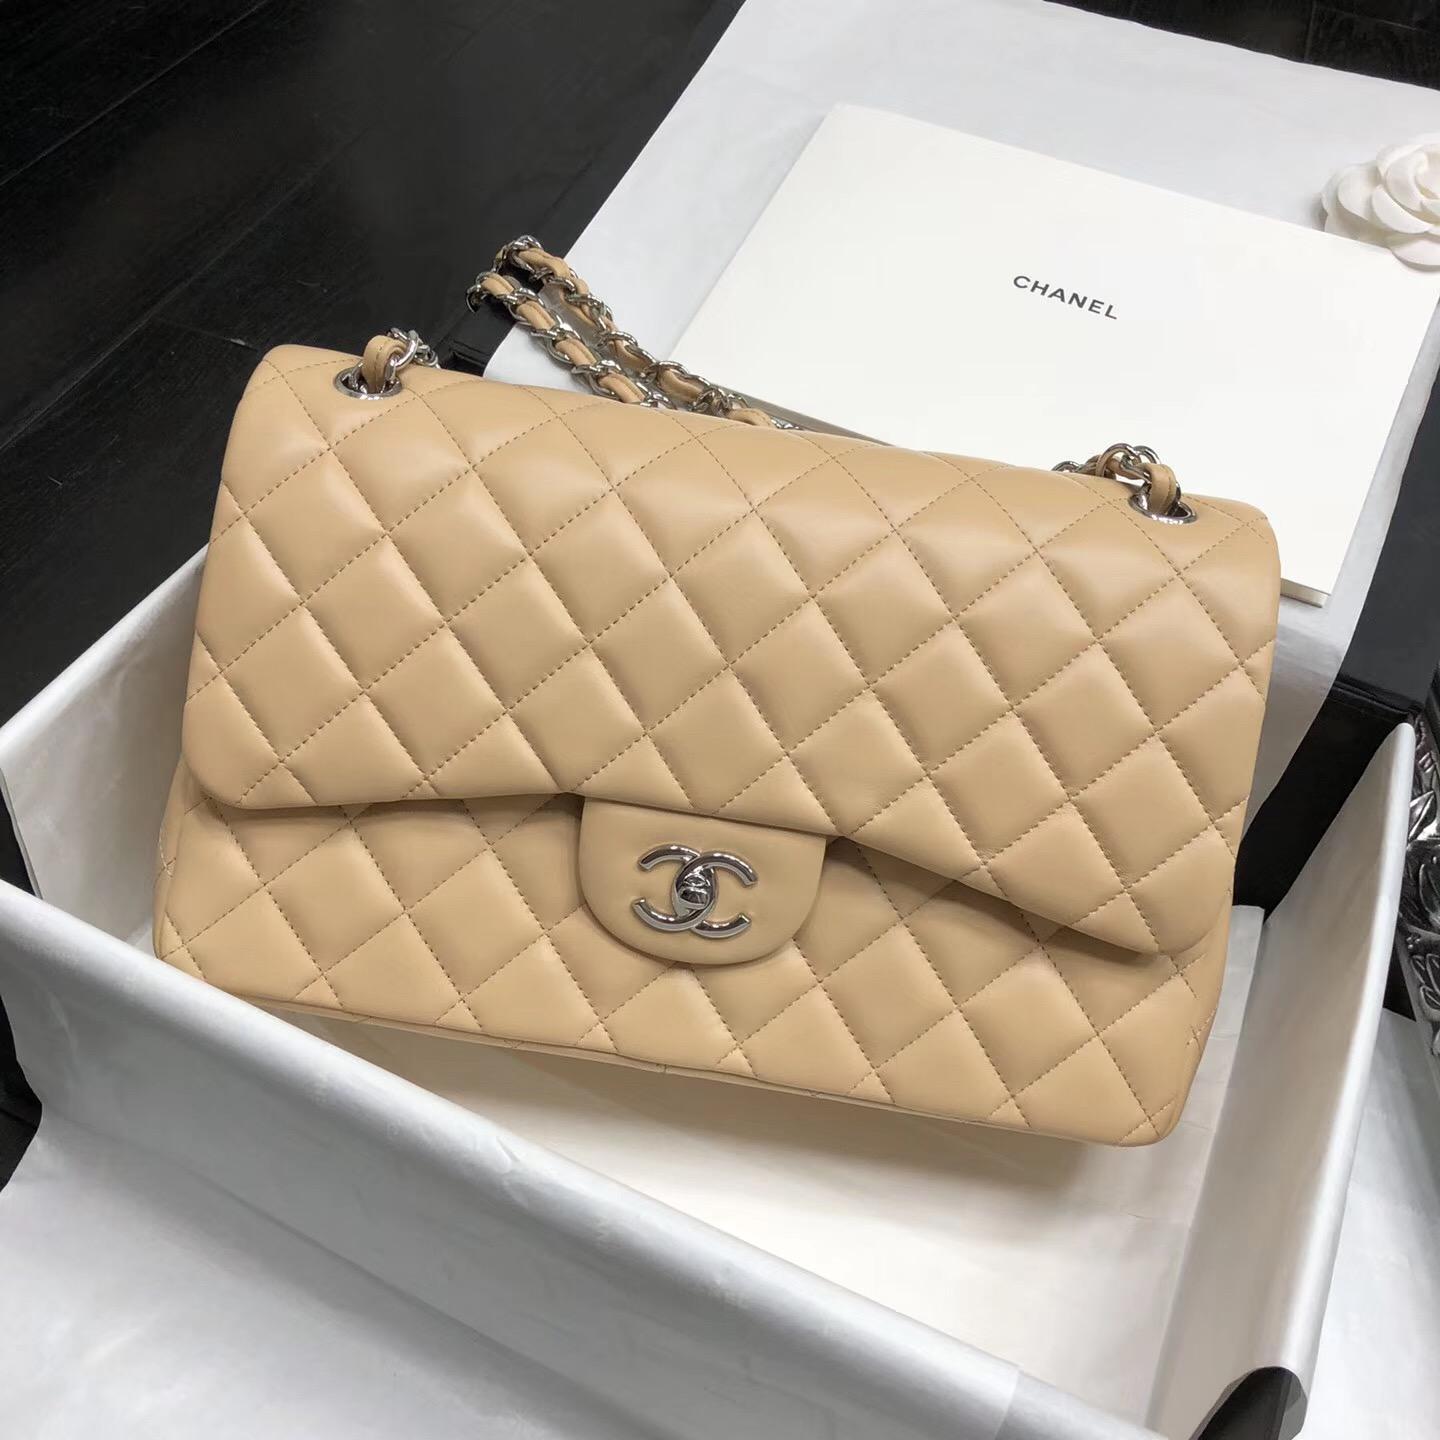 Chanel Handbags For Sale Canada's | semashow.com